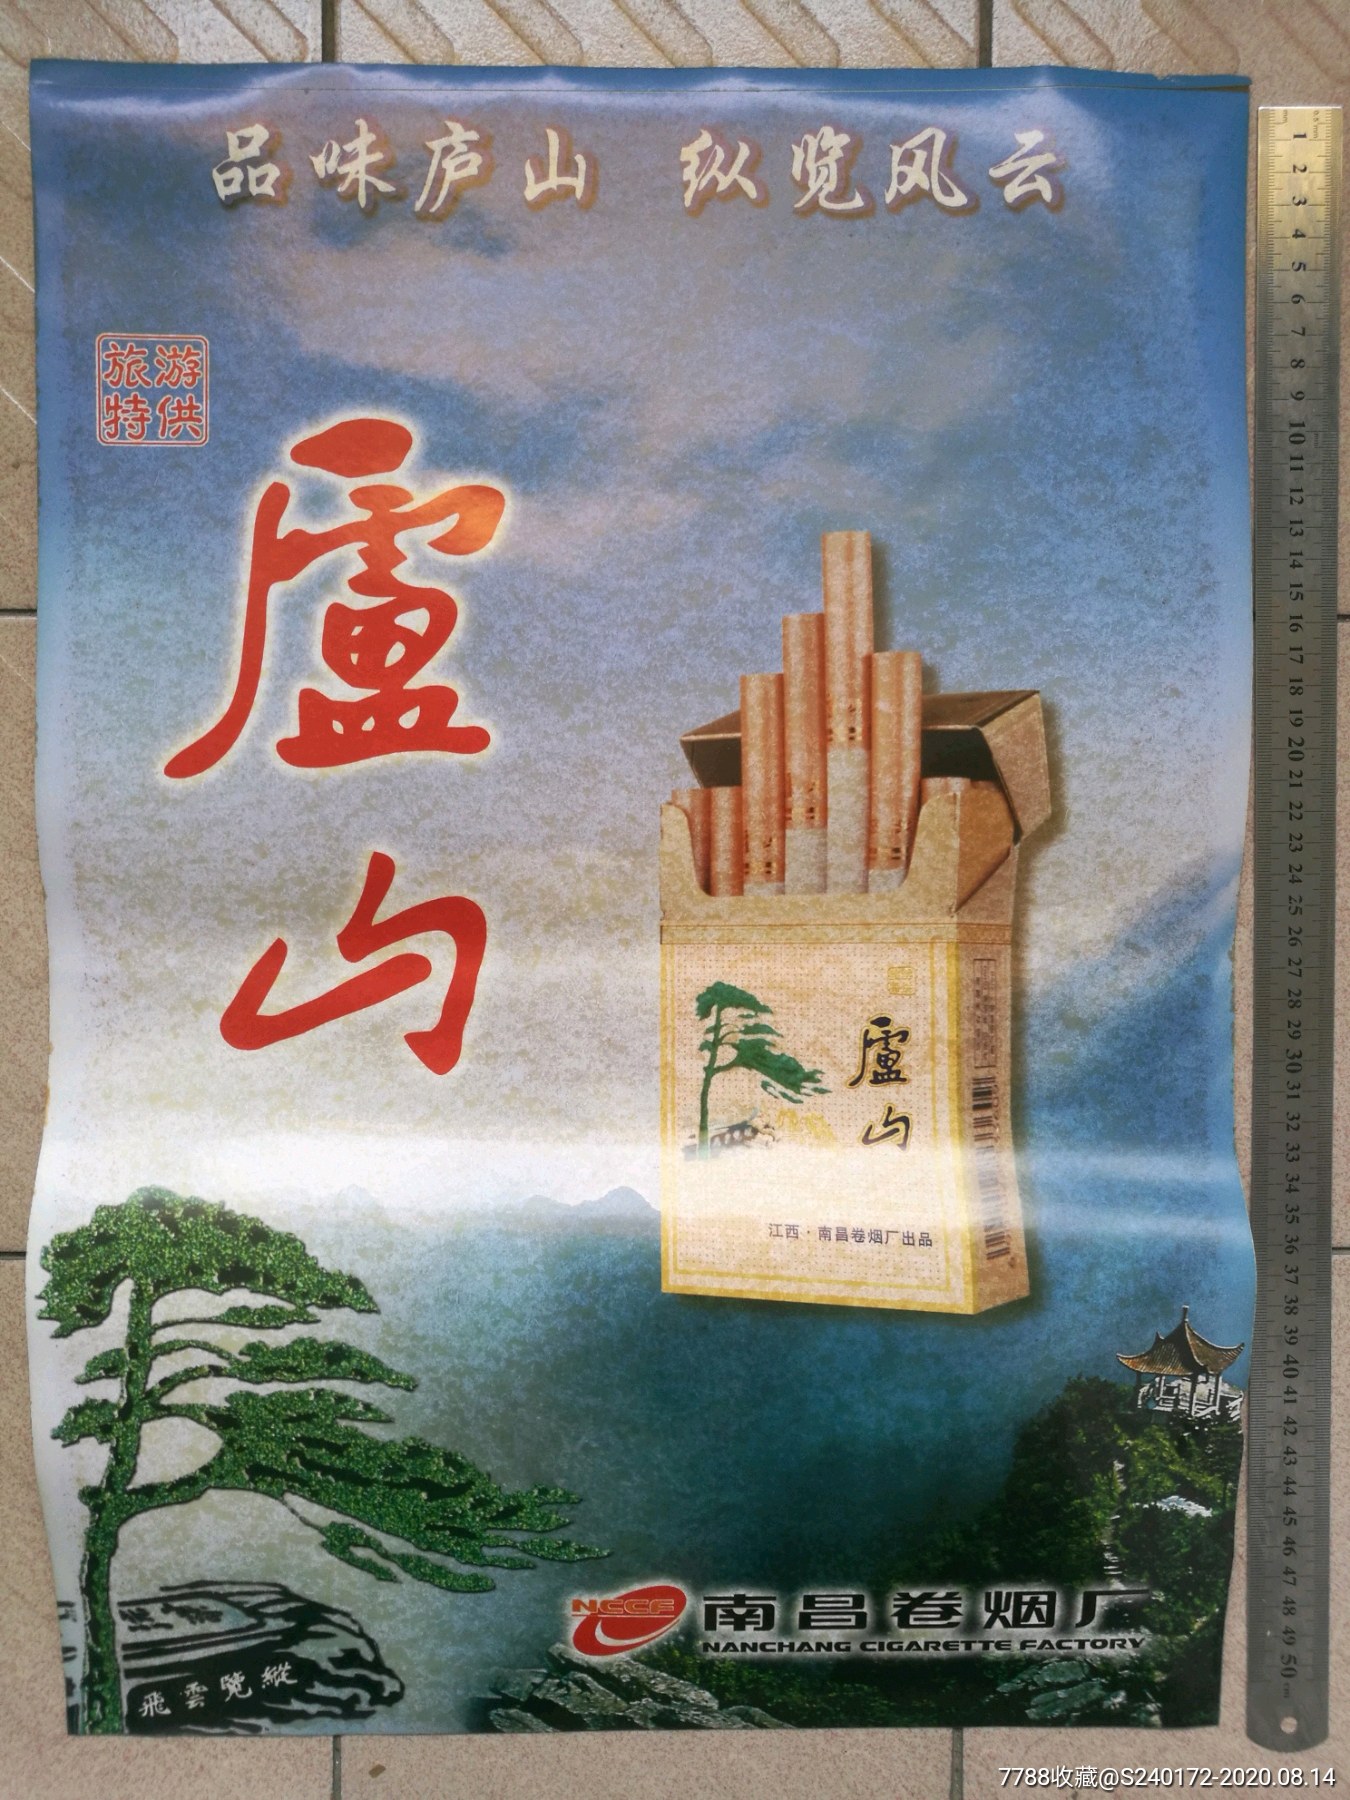 旅游特*庐山香烟广告